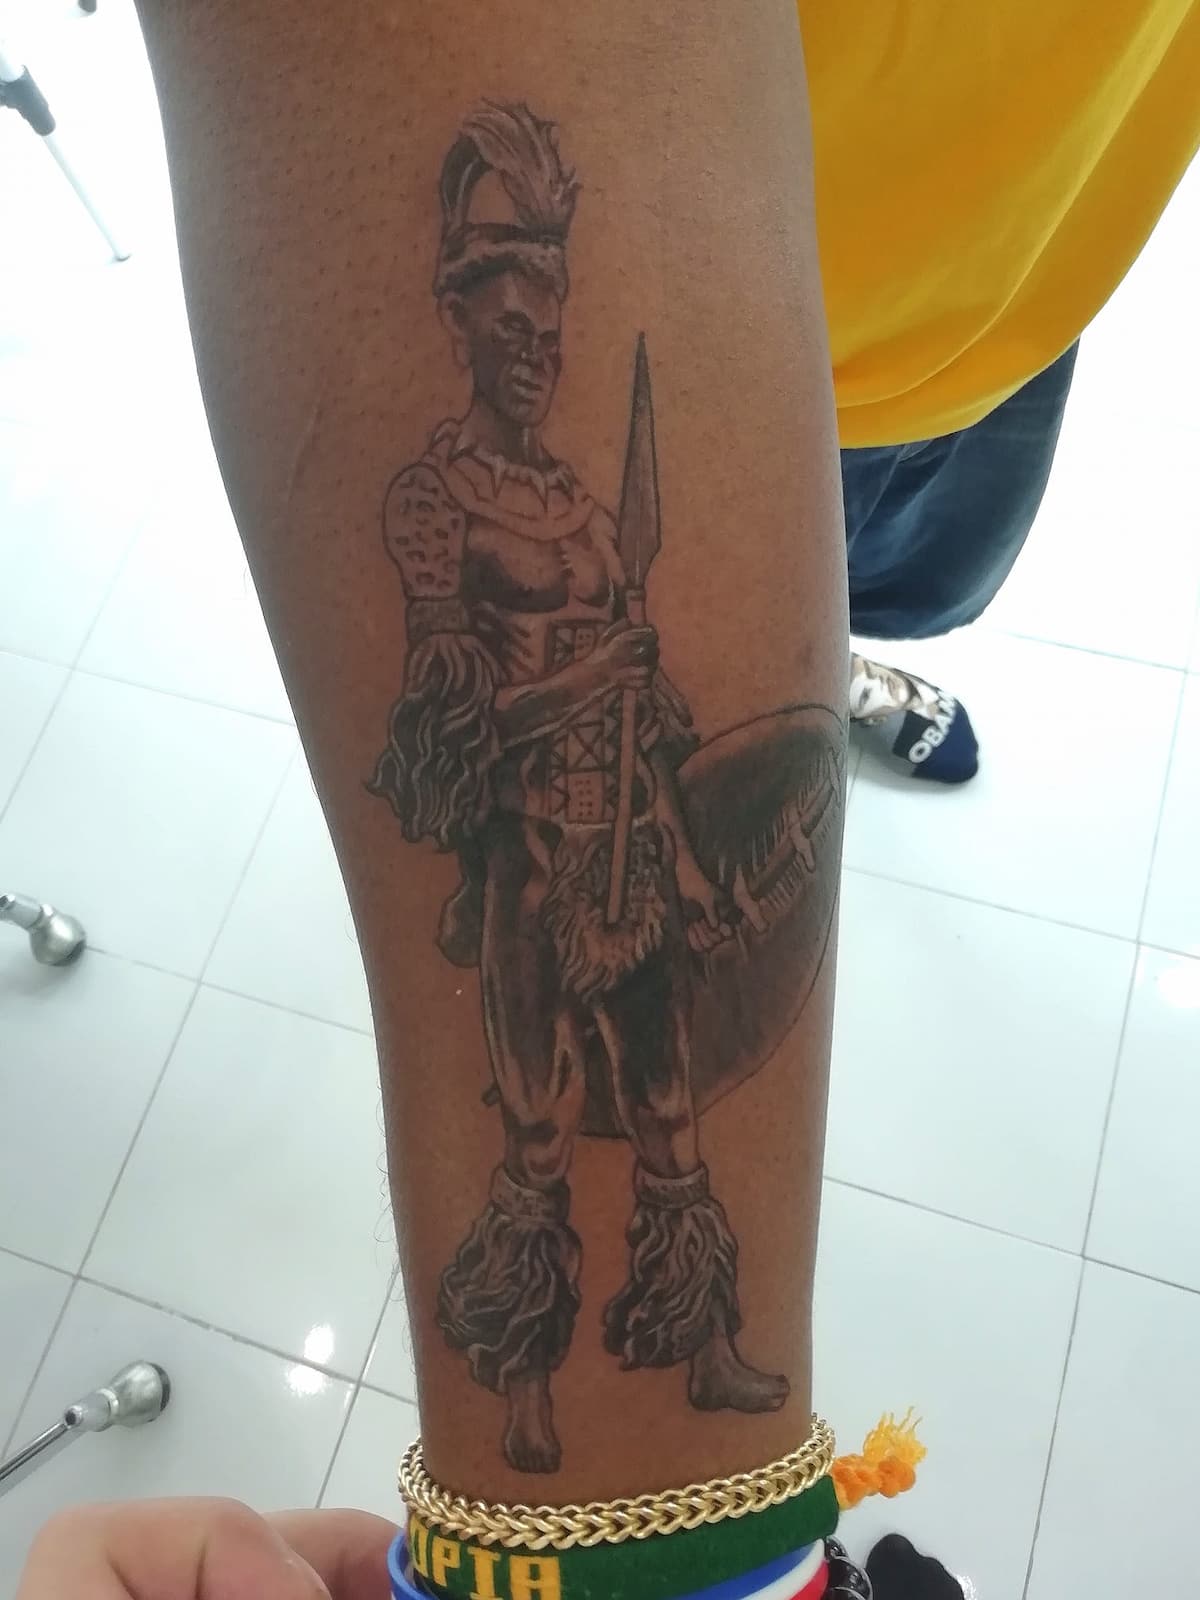 Buy Gungnir Tattoo Spear of Odin Tattoo / Gungnir Temporary Tattoo /  Valknut Temporary Tattoo / Odin's Spear Tattoo / Viking Tattoo / Runes  Online in India - Etsy